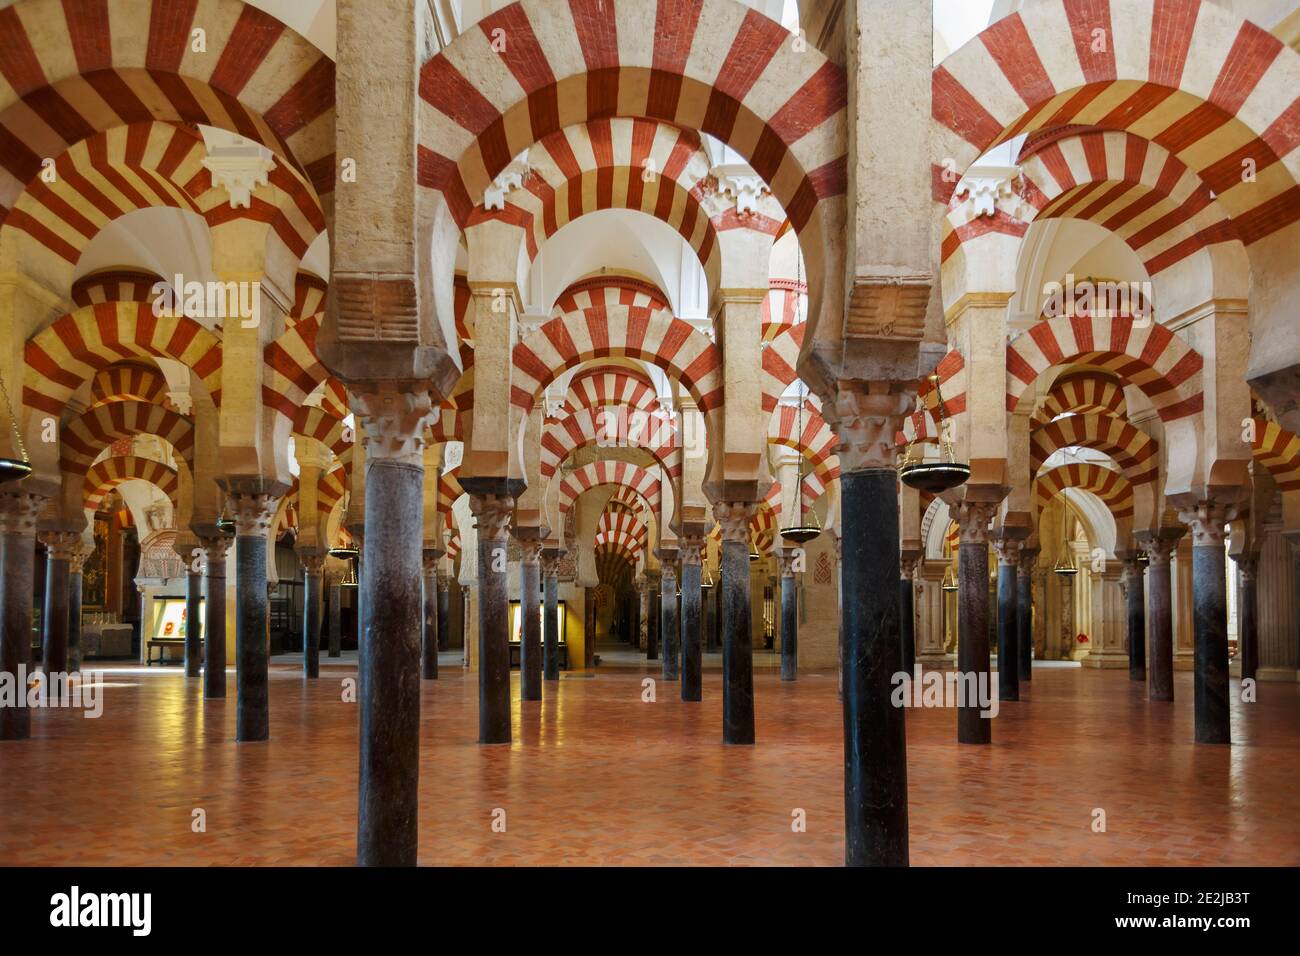 Cordoue, province de Cordoue, Andalousie, sud de l'Espagne. Intérieur de la Grande Mosquée, la Mezquita. La mosquée de Cordoue est classée au patrimoine mondial de l'UNESCO Banque D'Images